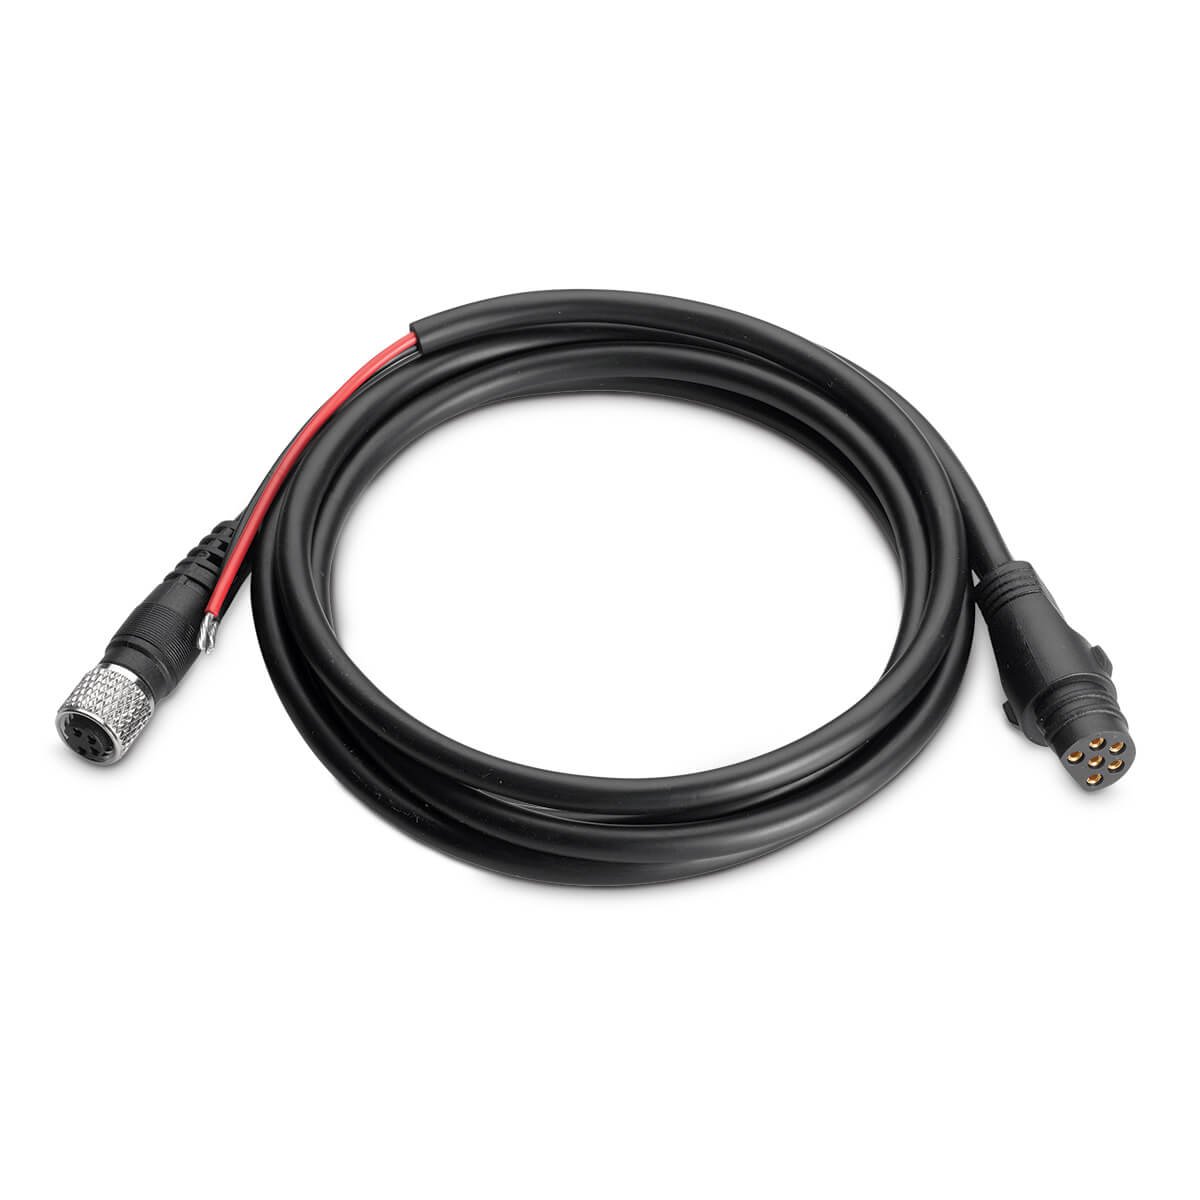 Minn Kota US2/MDI Adapter Cables